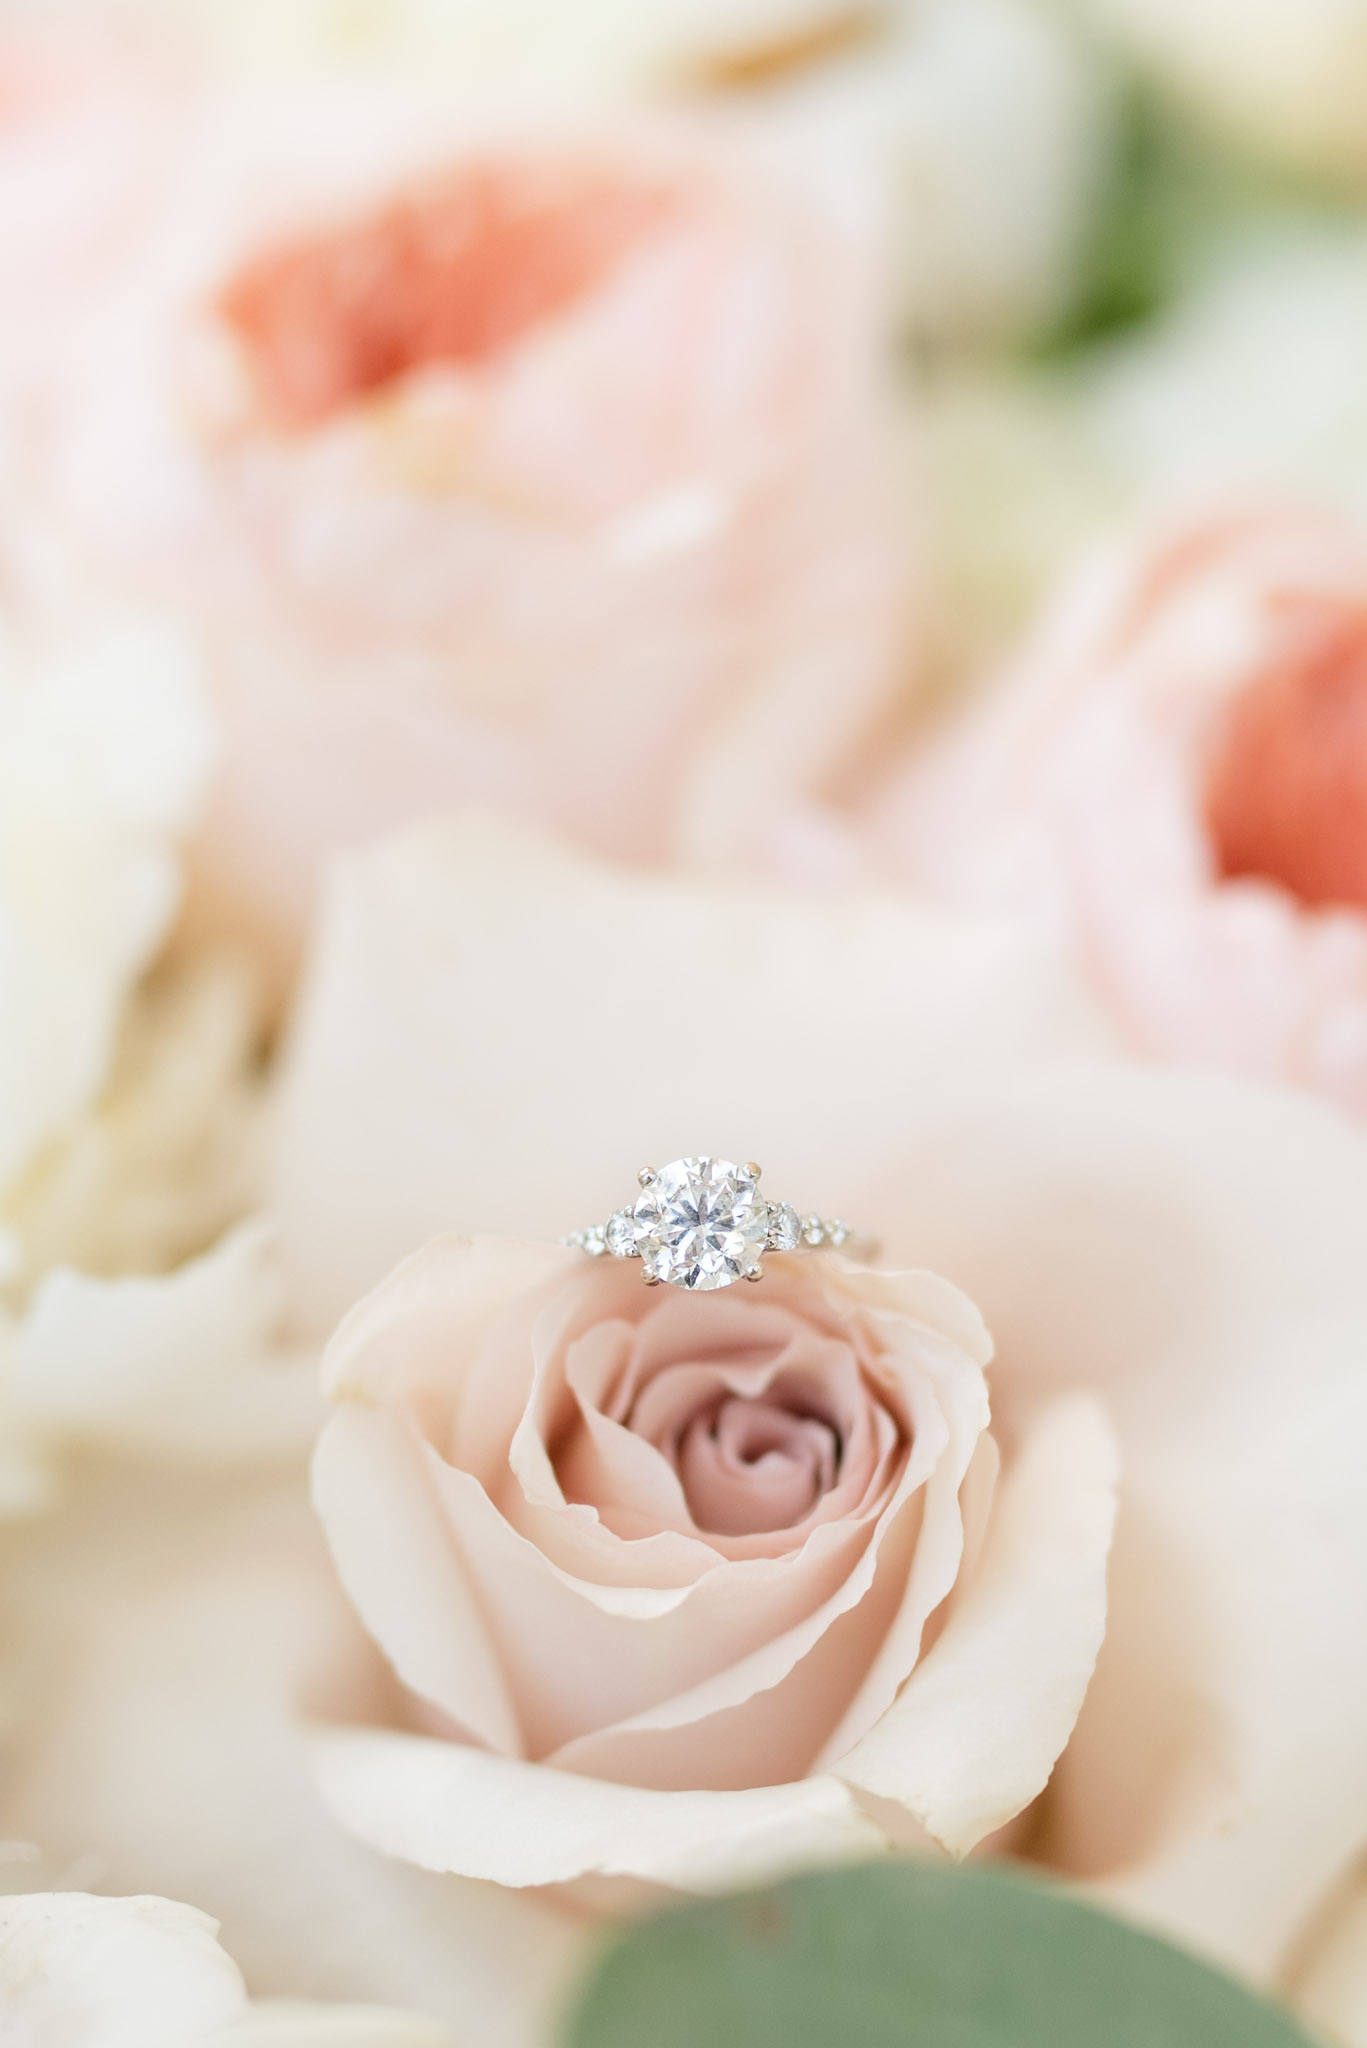 Wedding ring sits on rose